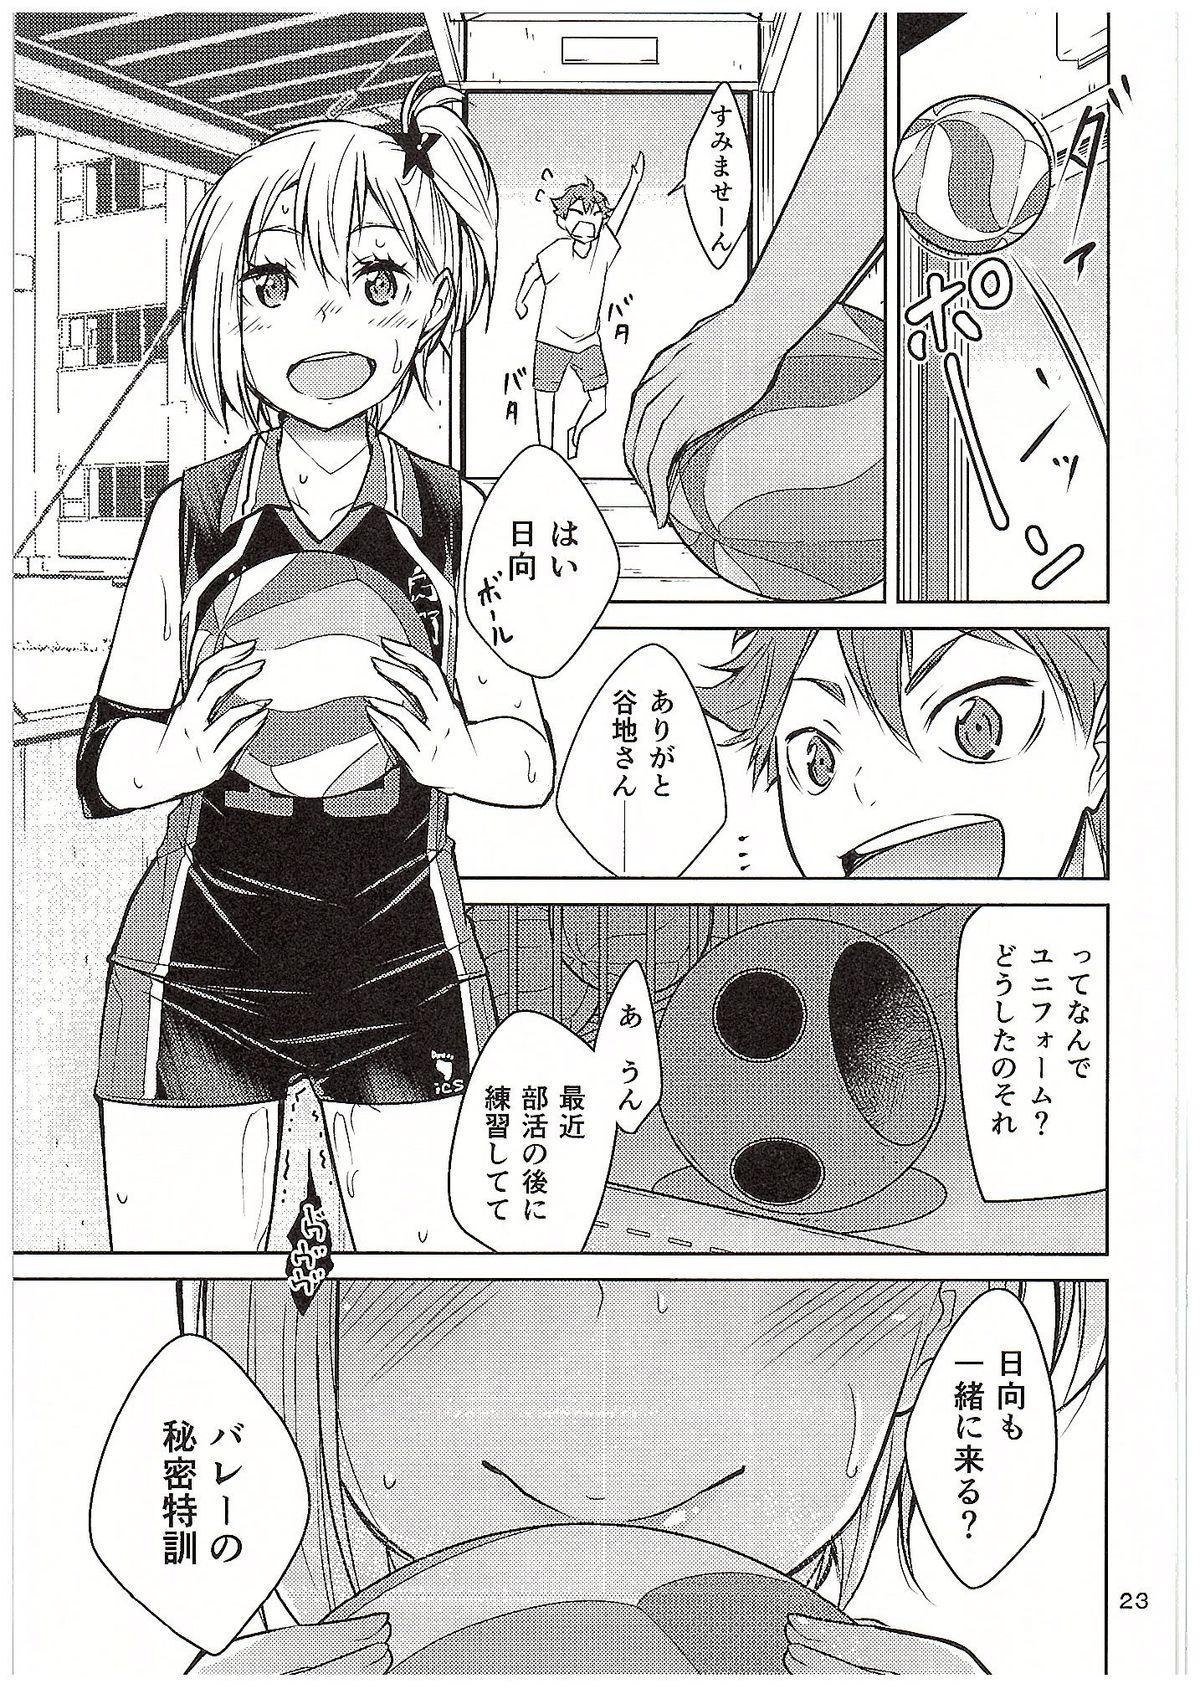 Moeyo! Karasuno Volleyball Shinzenjiai 22